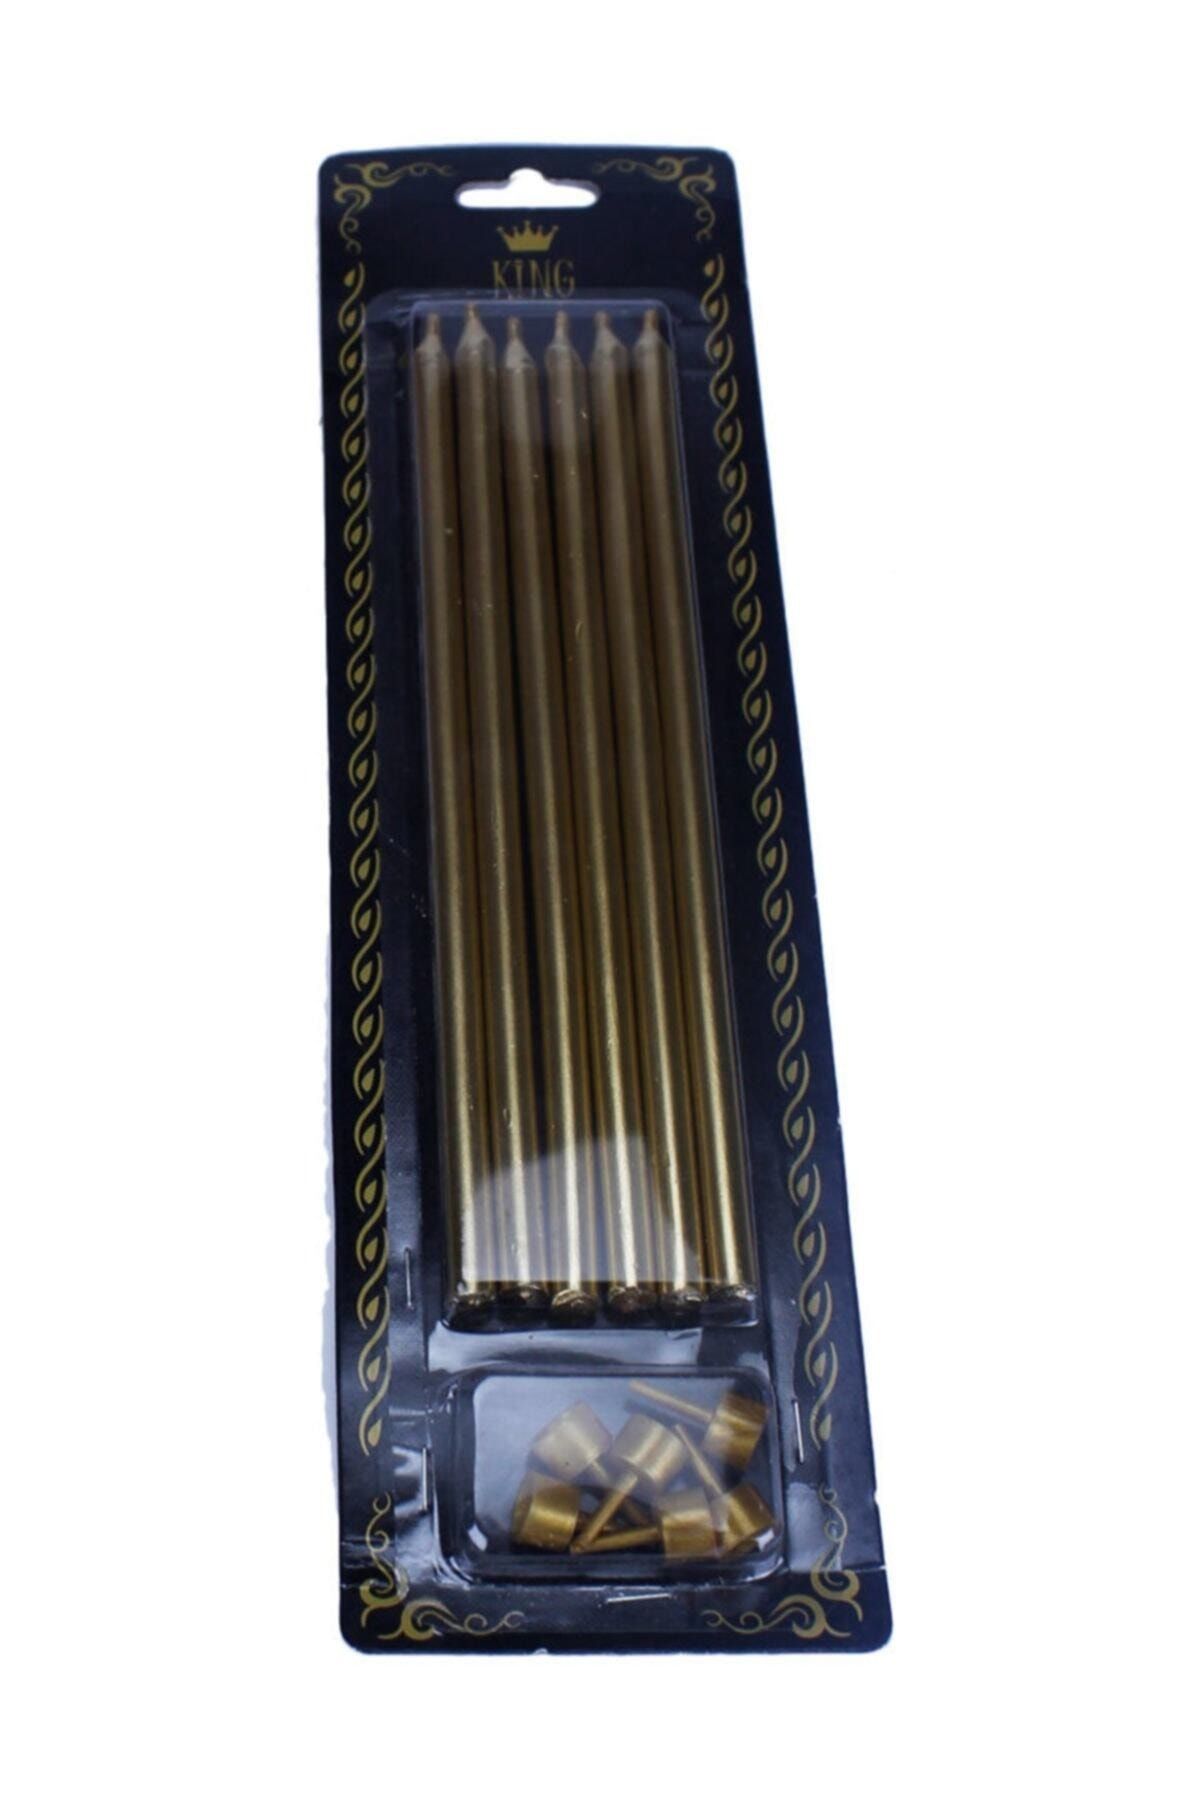 TT Tahtakale Toptancıları Doğum Günü Pasta Mumu Renkli Gold Gümüş 18 cm 6 Adet Gold